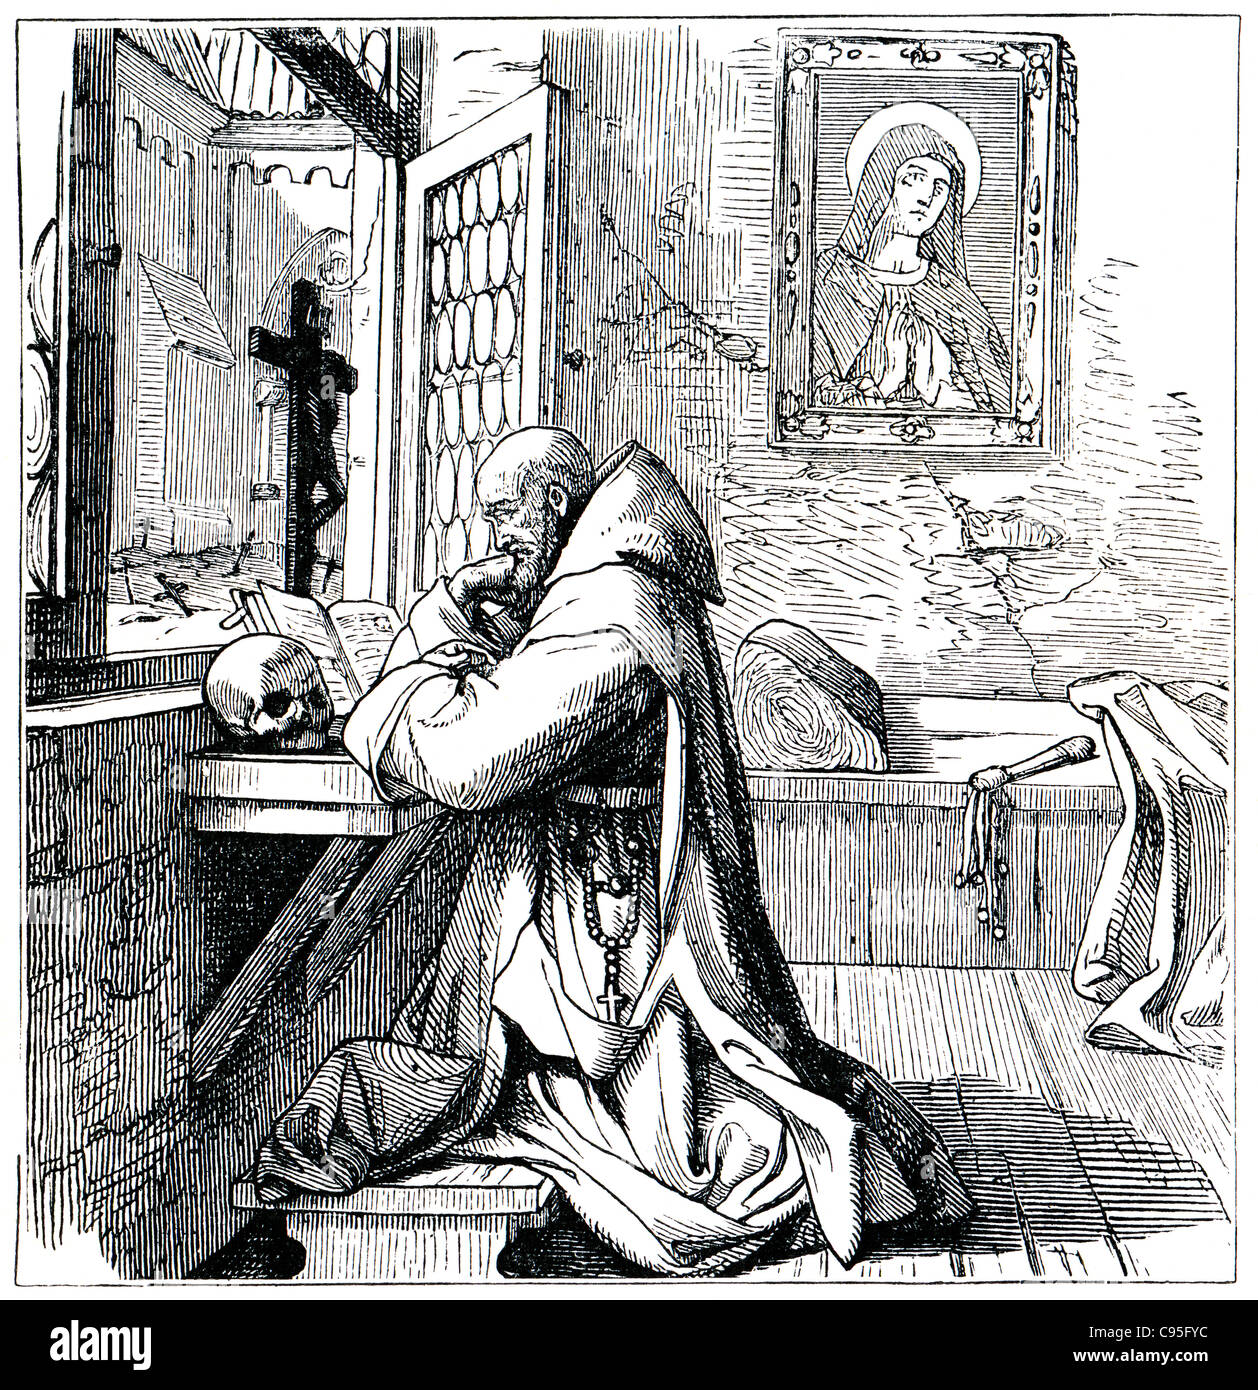 Alte Stiche. Zeigt einen betenden Mönch. Das Buch "History of the Church", 1880 Stockfoto